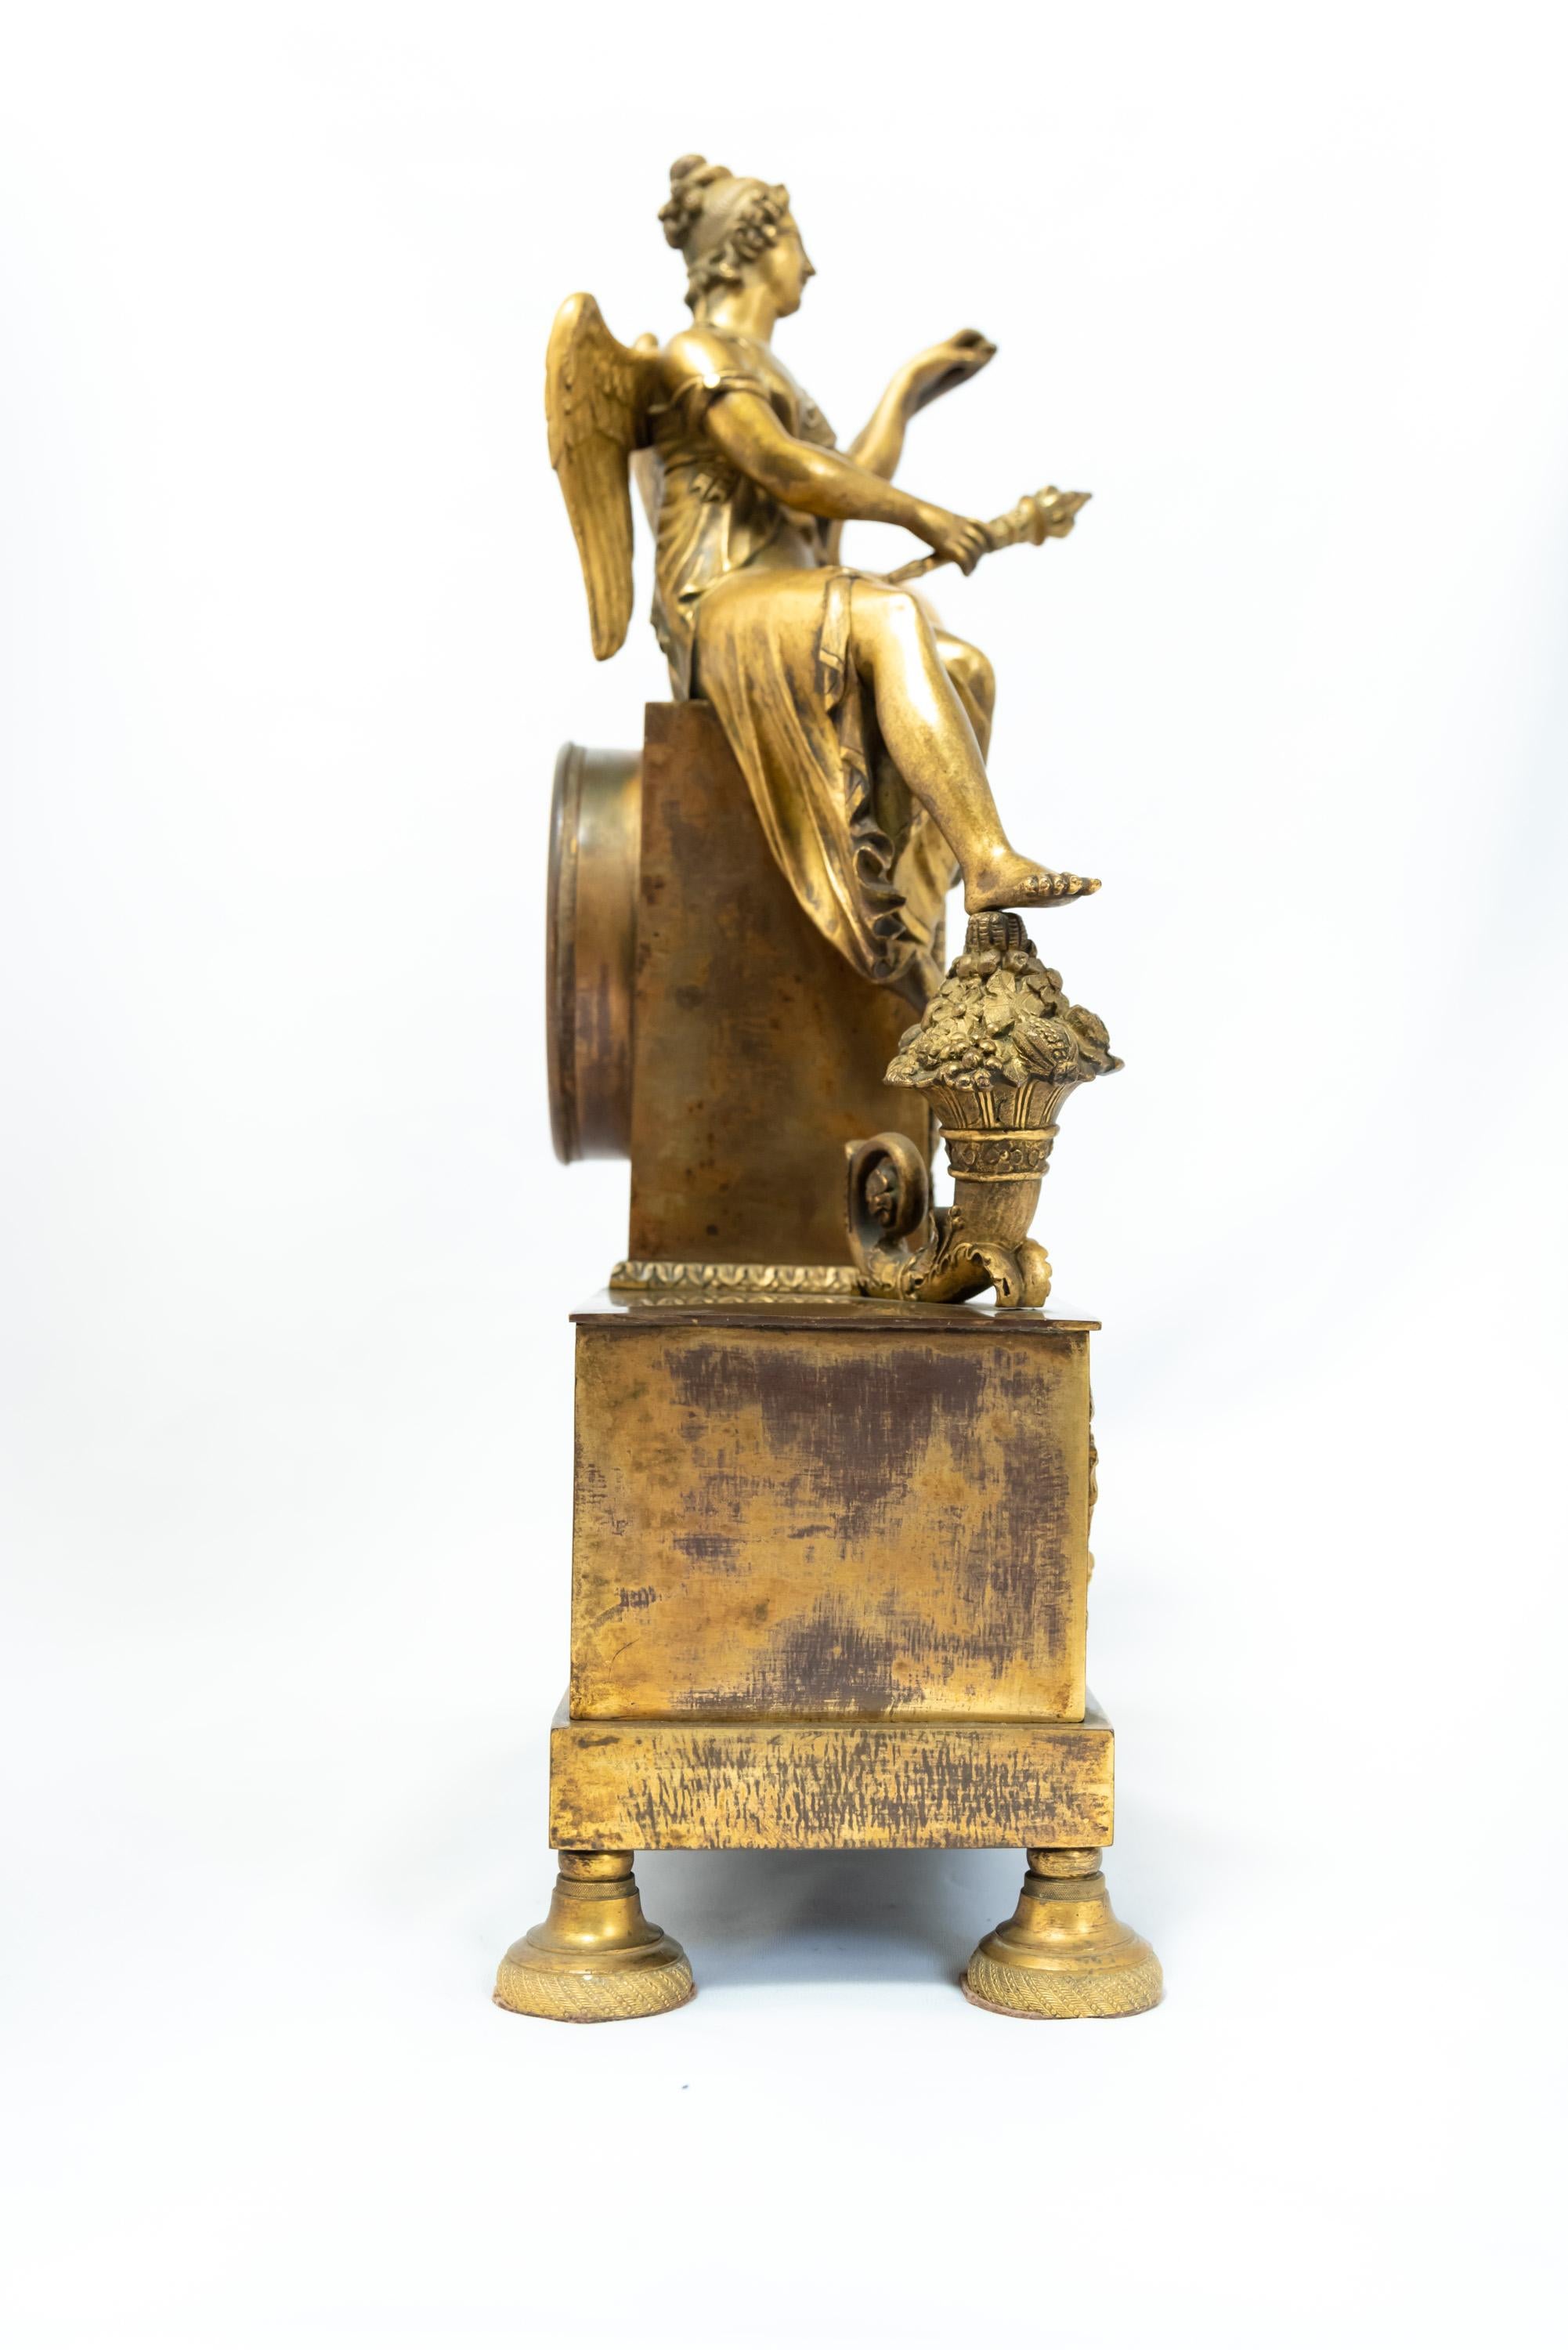 Eine französische feuervergoldete Uhr, die eine sitzende weibliche Figur darstellt - der Ikonographie nach zu urteilen wohl Urania. Zeitalter des Kaiserreichs, 1800-1815. Die Vergoldung weist Gebrauchsspuren auf, und der versilberte